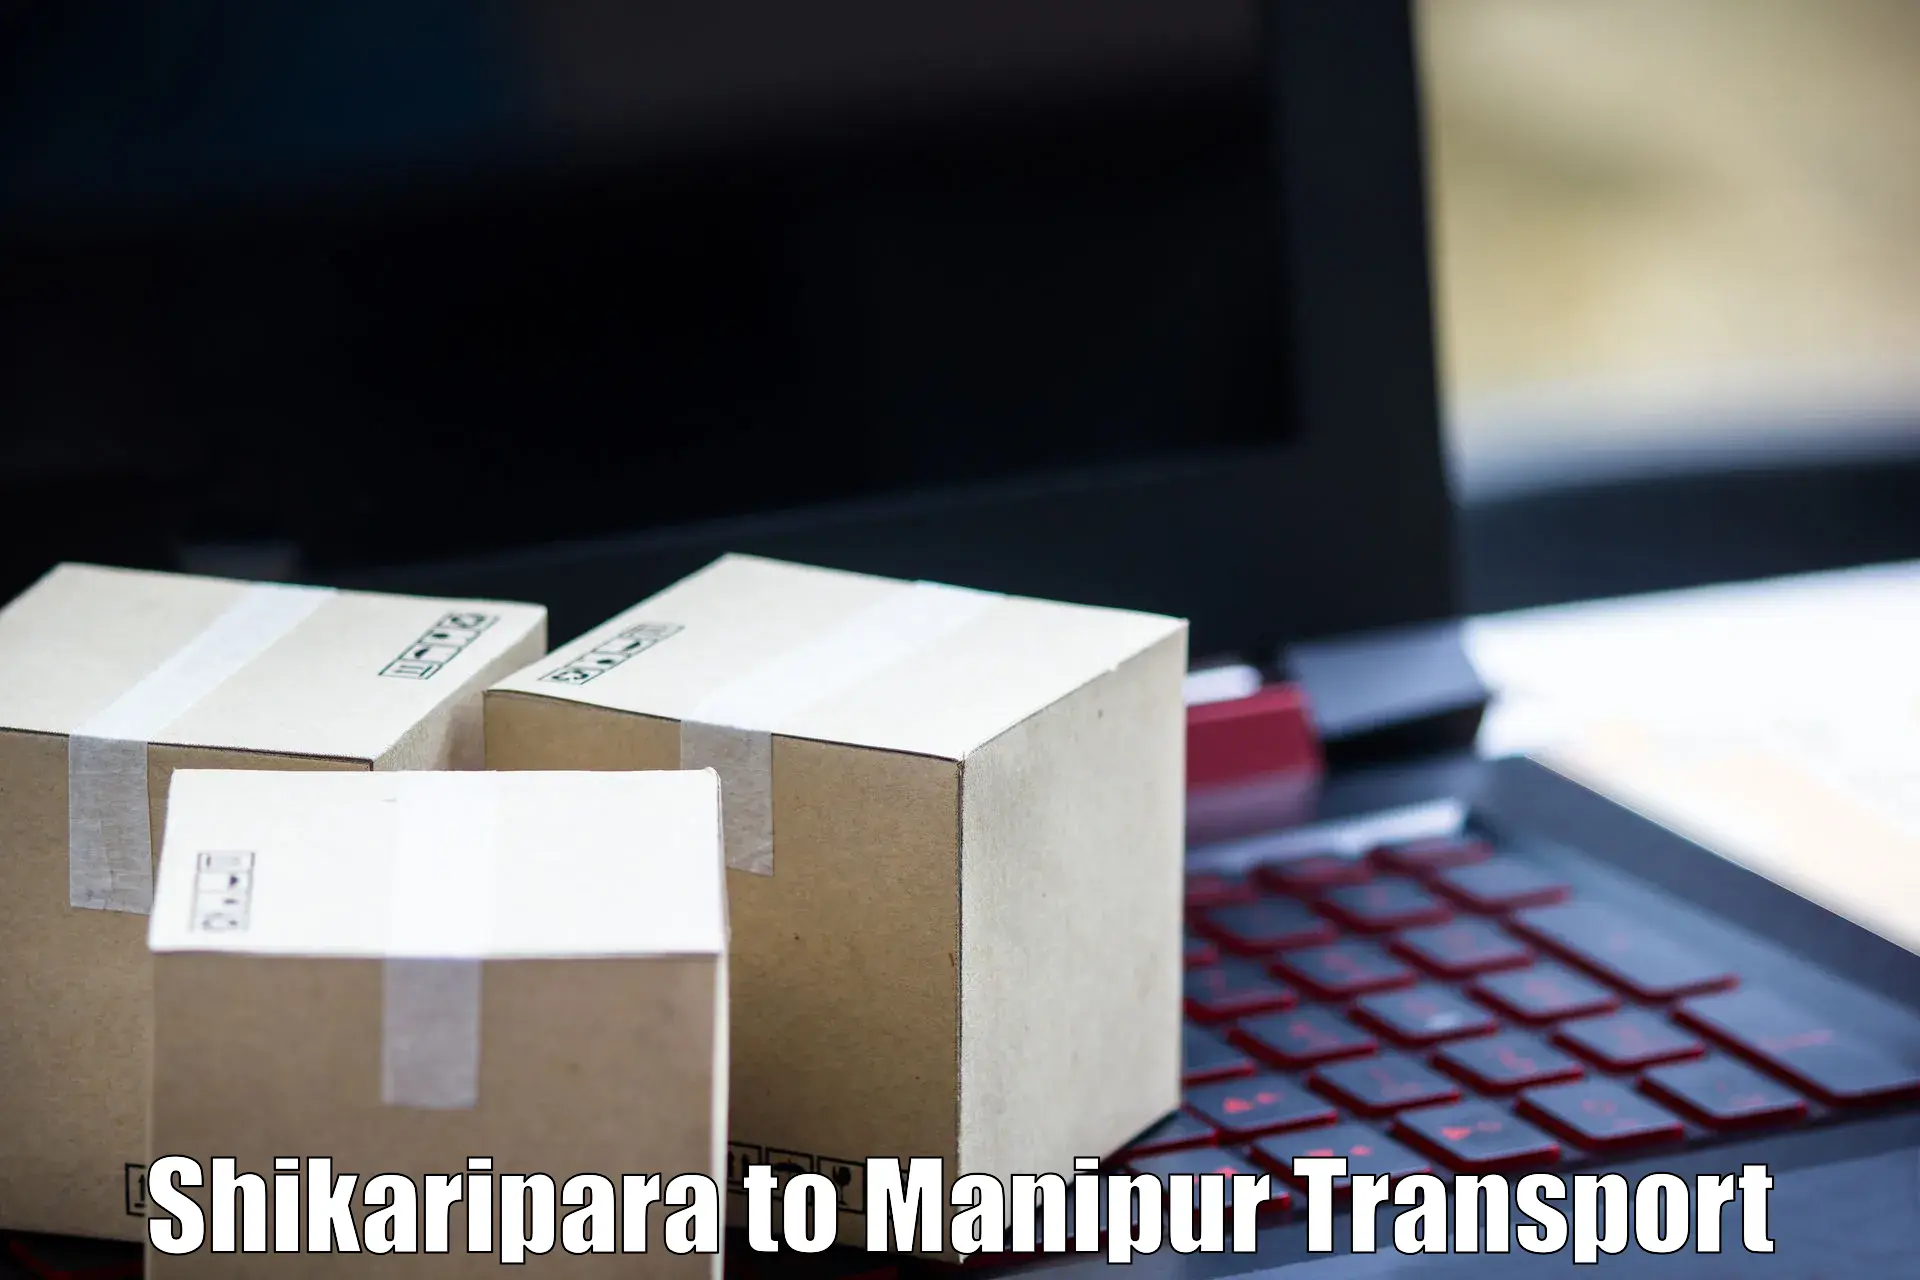 Online transport service Shikaripara to Kanti